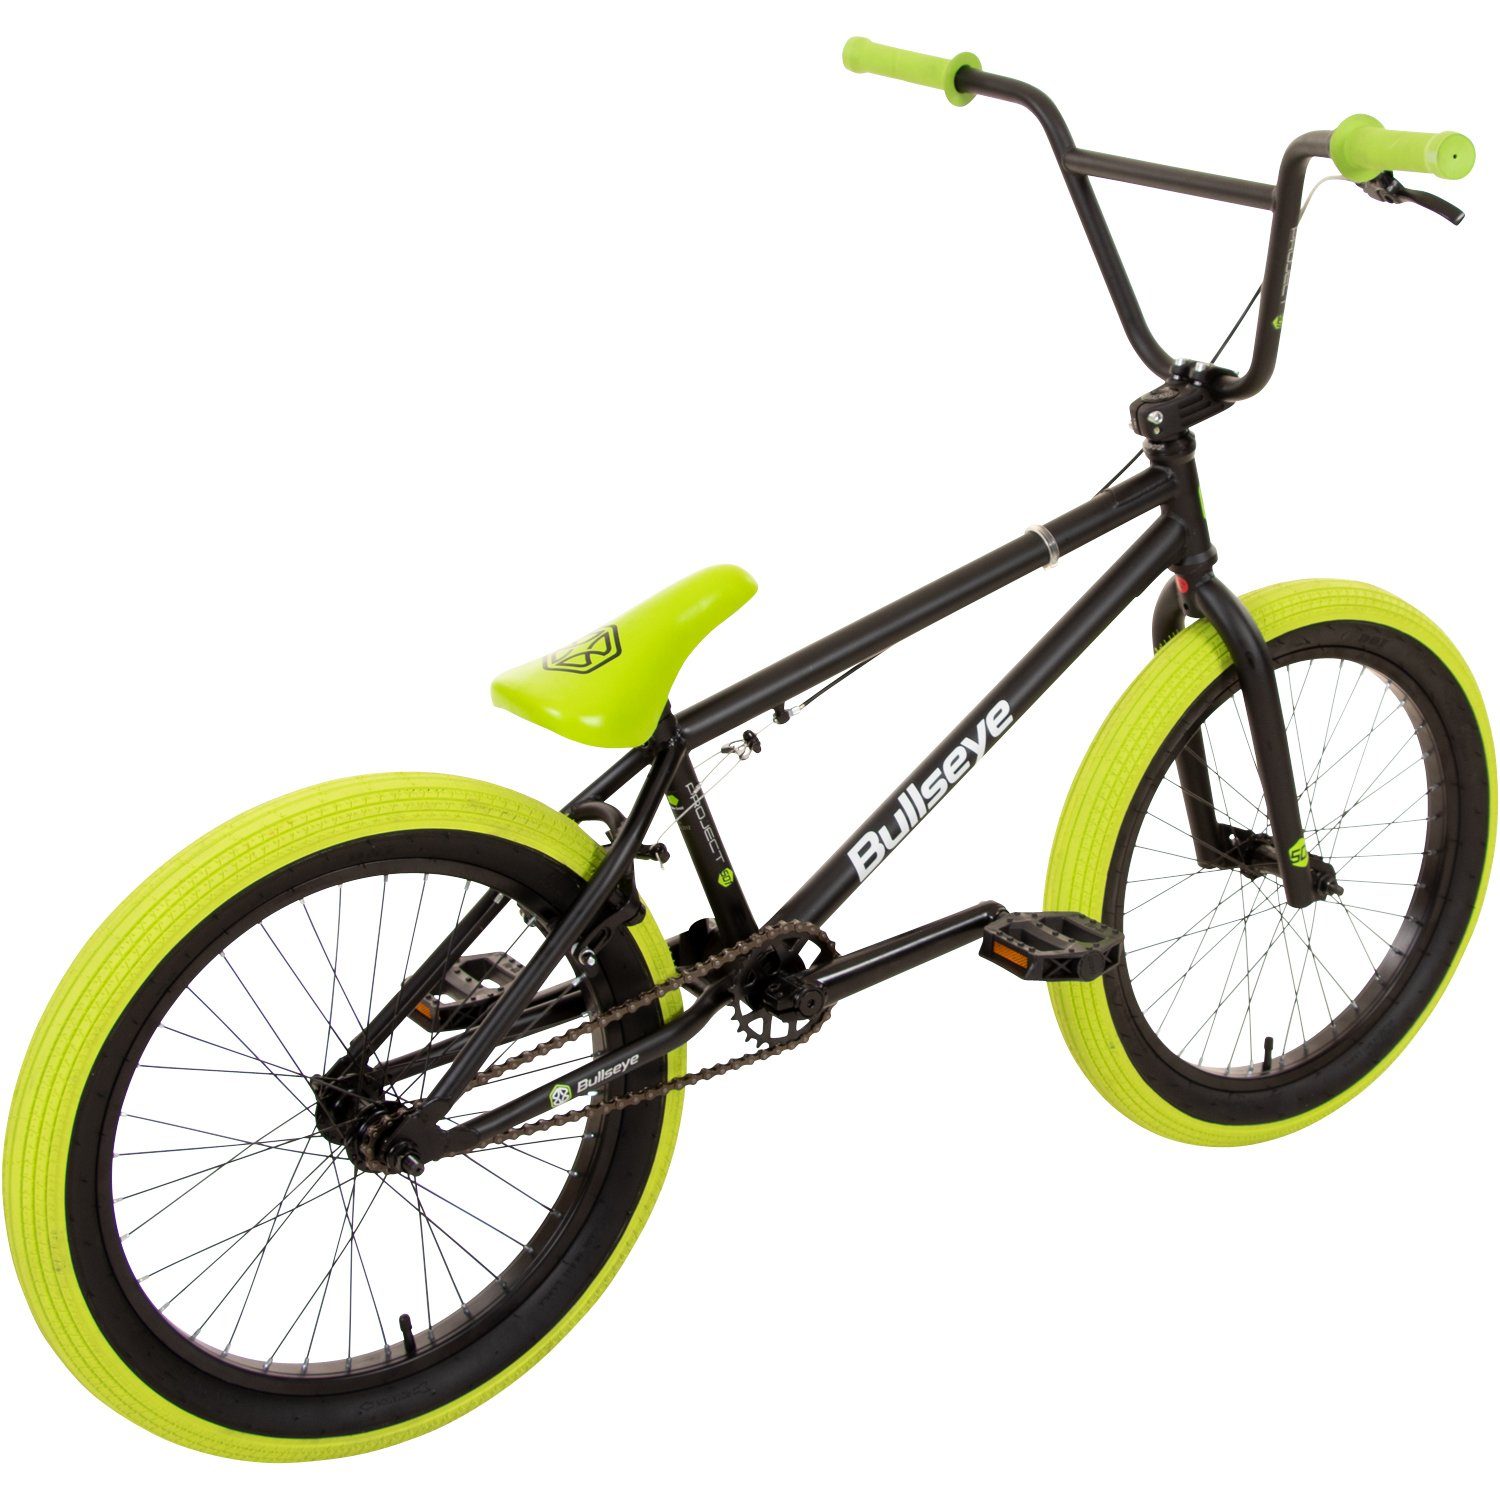 Erwachsene - cm ohne Jugendliche 501, BMX-Rad schwarz/grün mit 1 Gang, BMX 175 unisex 145 Pegs Schaltung, bullseye Fahrrad Project